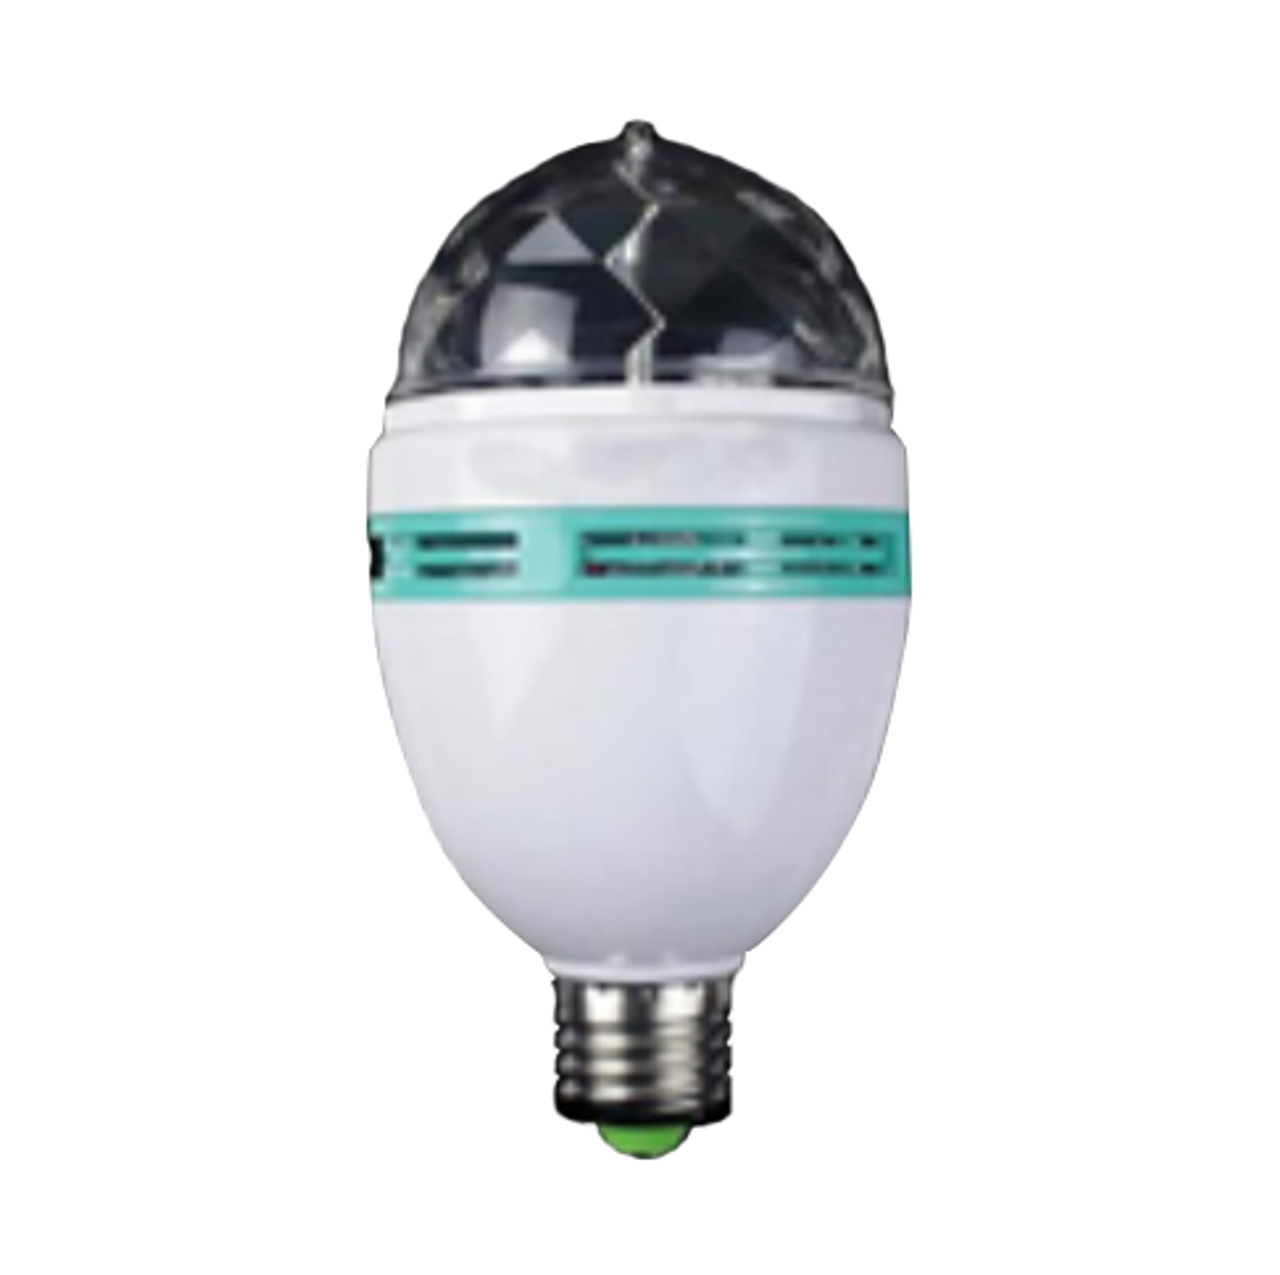 LED RGB Disco Magic Ball - 3 Watt - Full Color Rotating Lamp